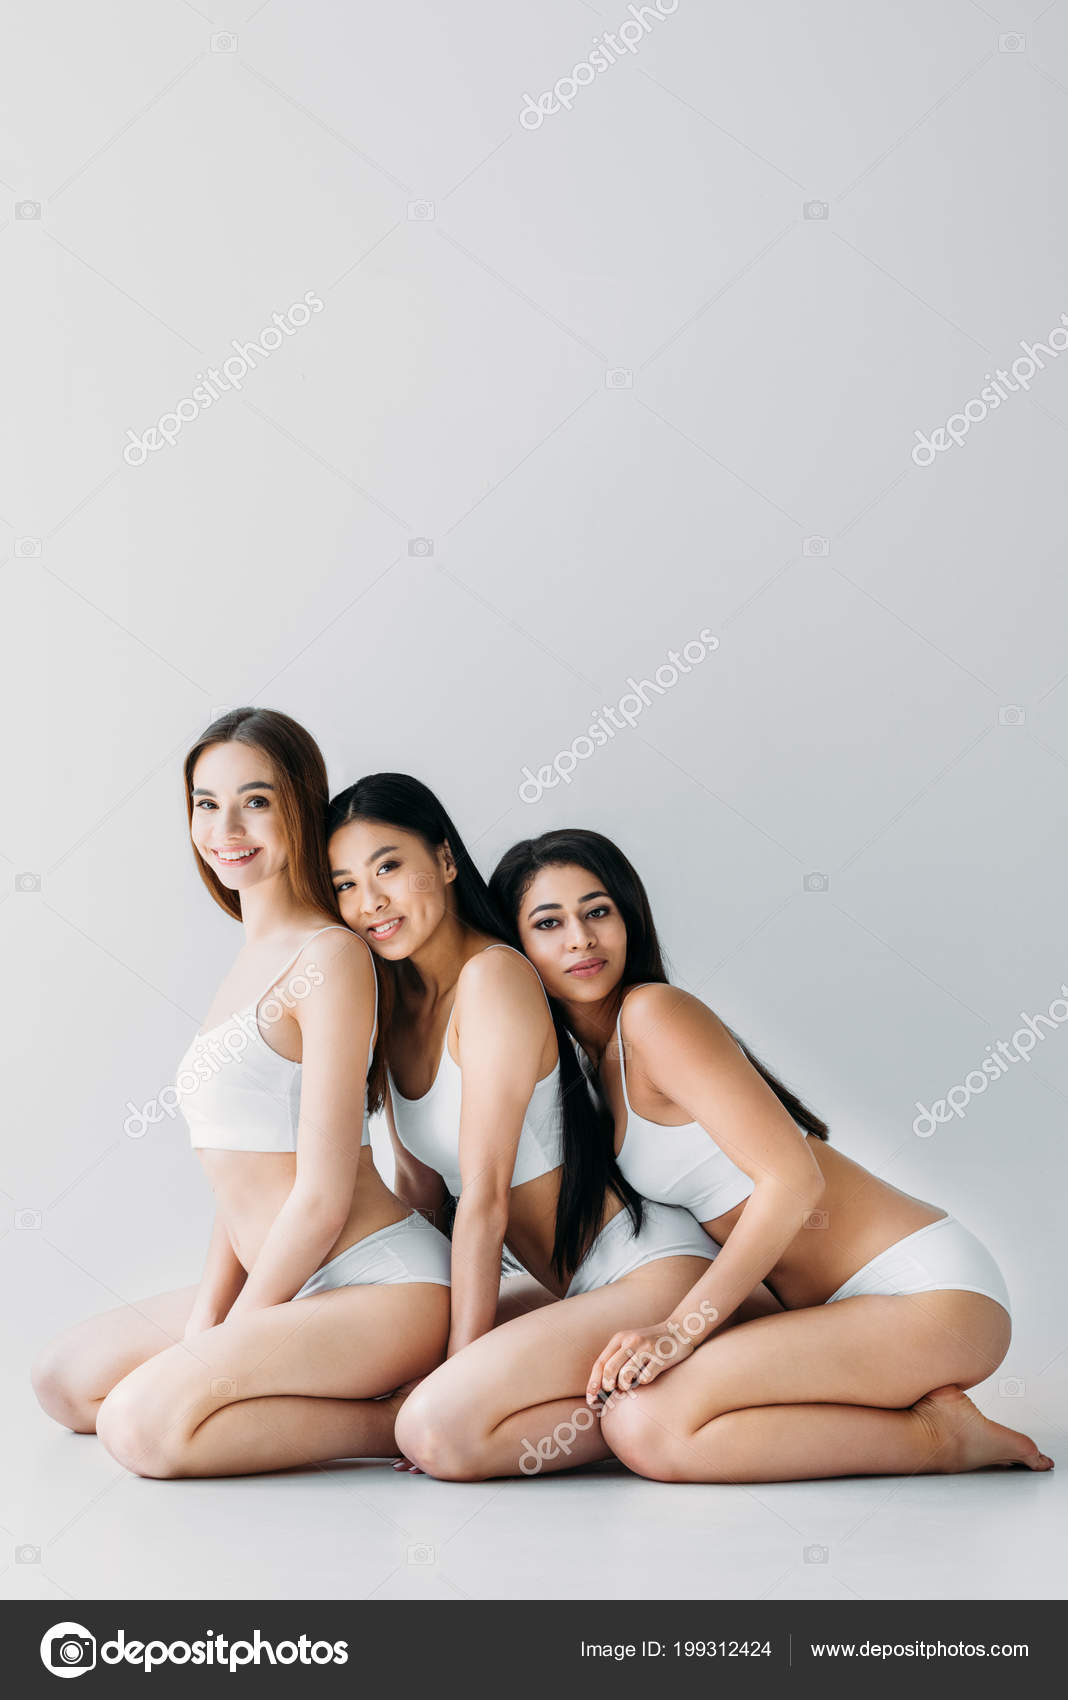 Friends - Underwear - Girl - White